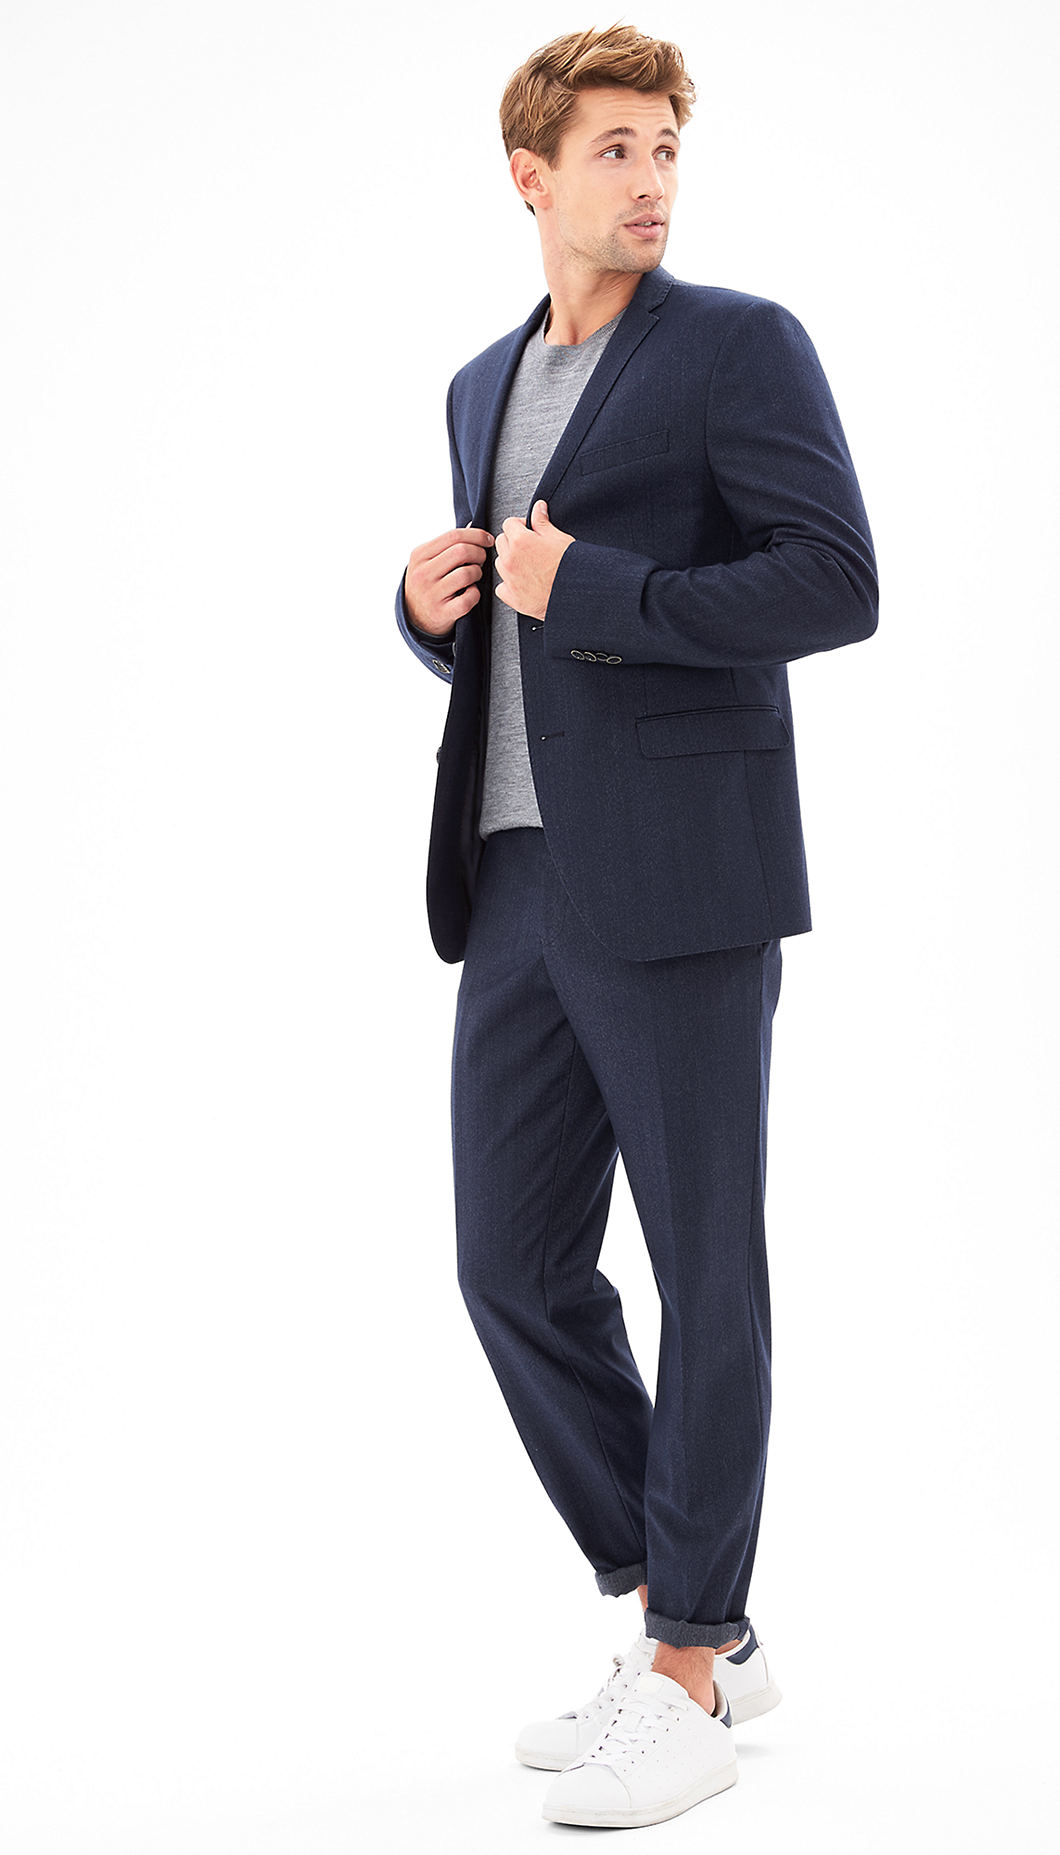 s.Oliver Pantsuits buy slim: mottled suit | s.oliver shop BLCPSFD